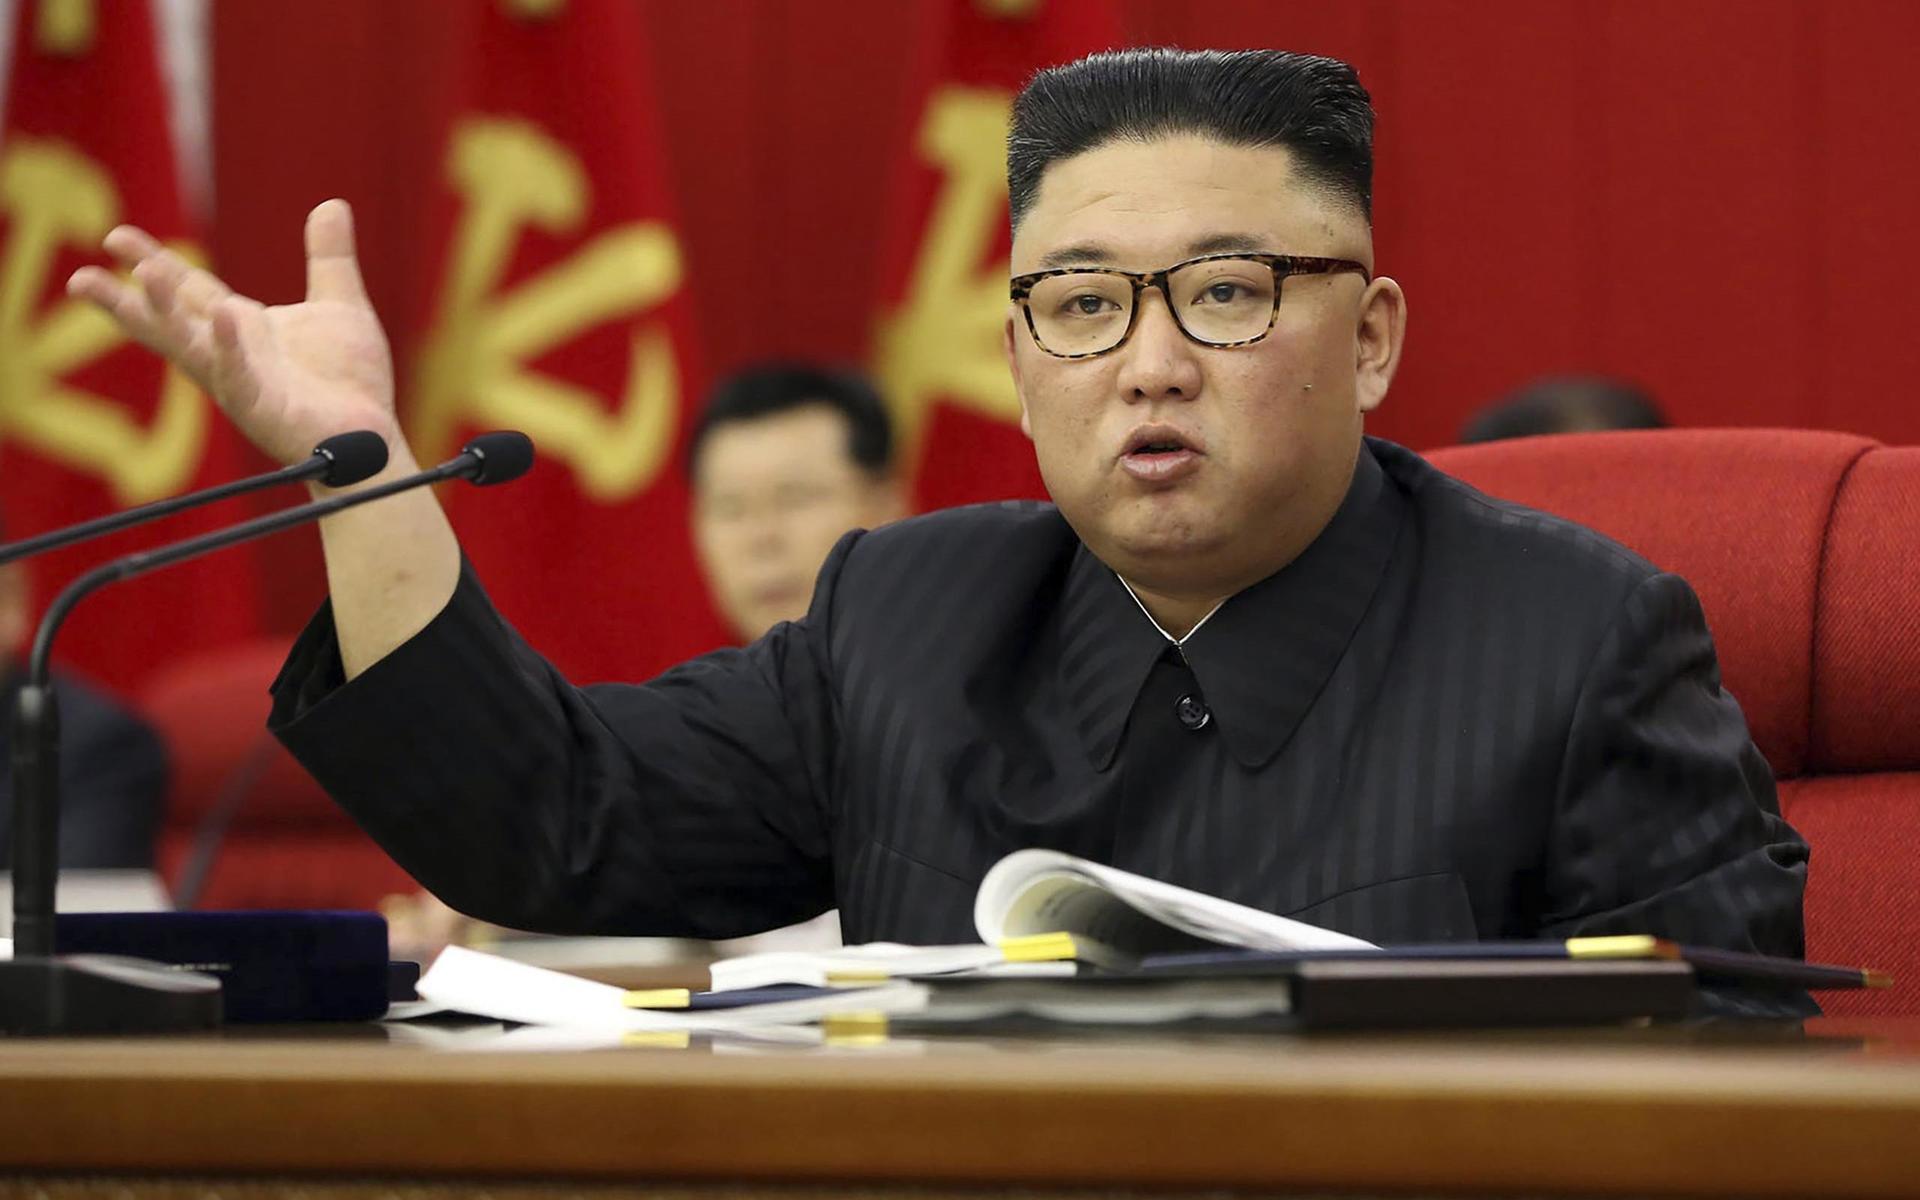 ”Folkets matsituation börjar bli ansträngd eftersom jordbrukssektorn inte lyckats följa sin plan för spannmålsproduktion på grund av skadorna efter förra årets tyfon”, sa Kim Jong-Un.